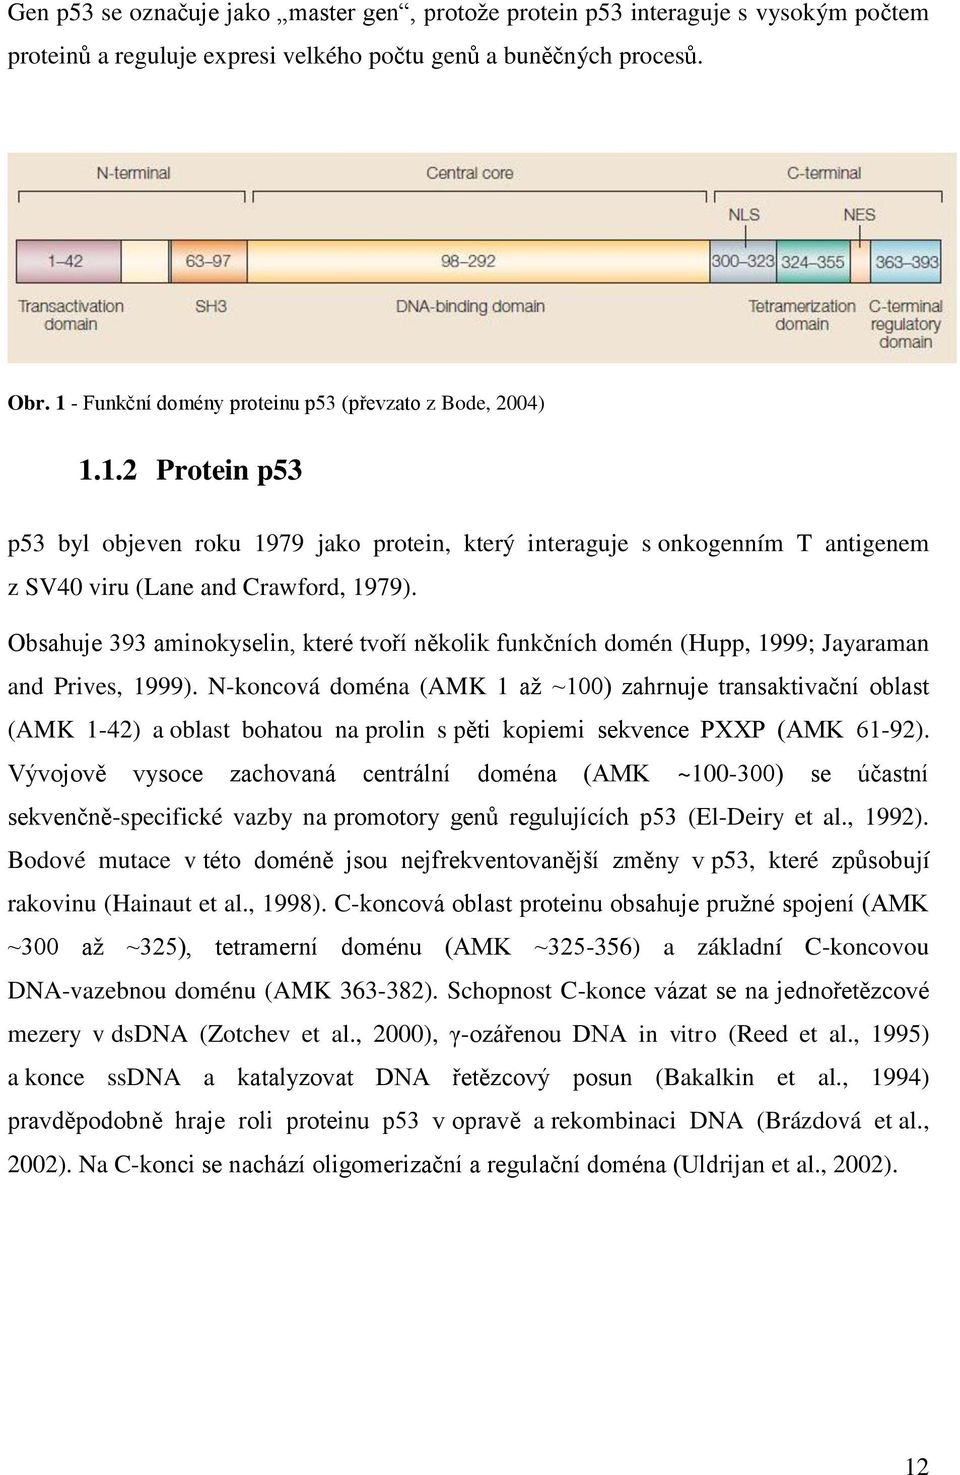 Obsahuje 393 aminokyselin, které tvoří několik funkčních domén (Hupp, 1999; Jayaraman and Prives, 1999).